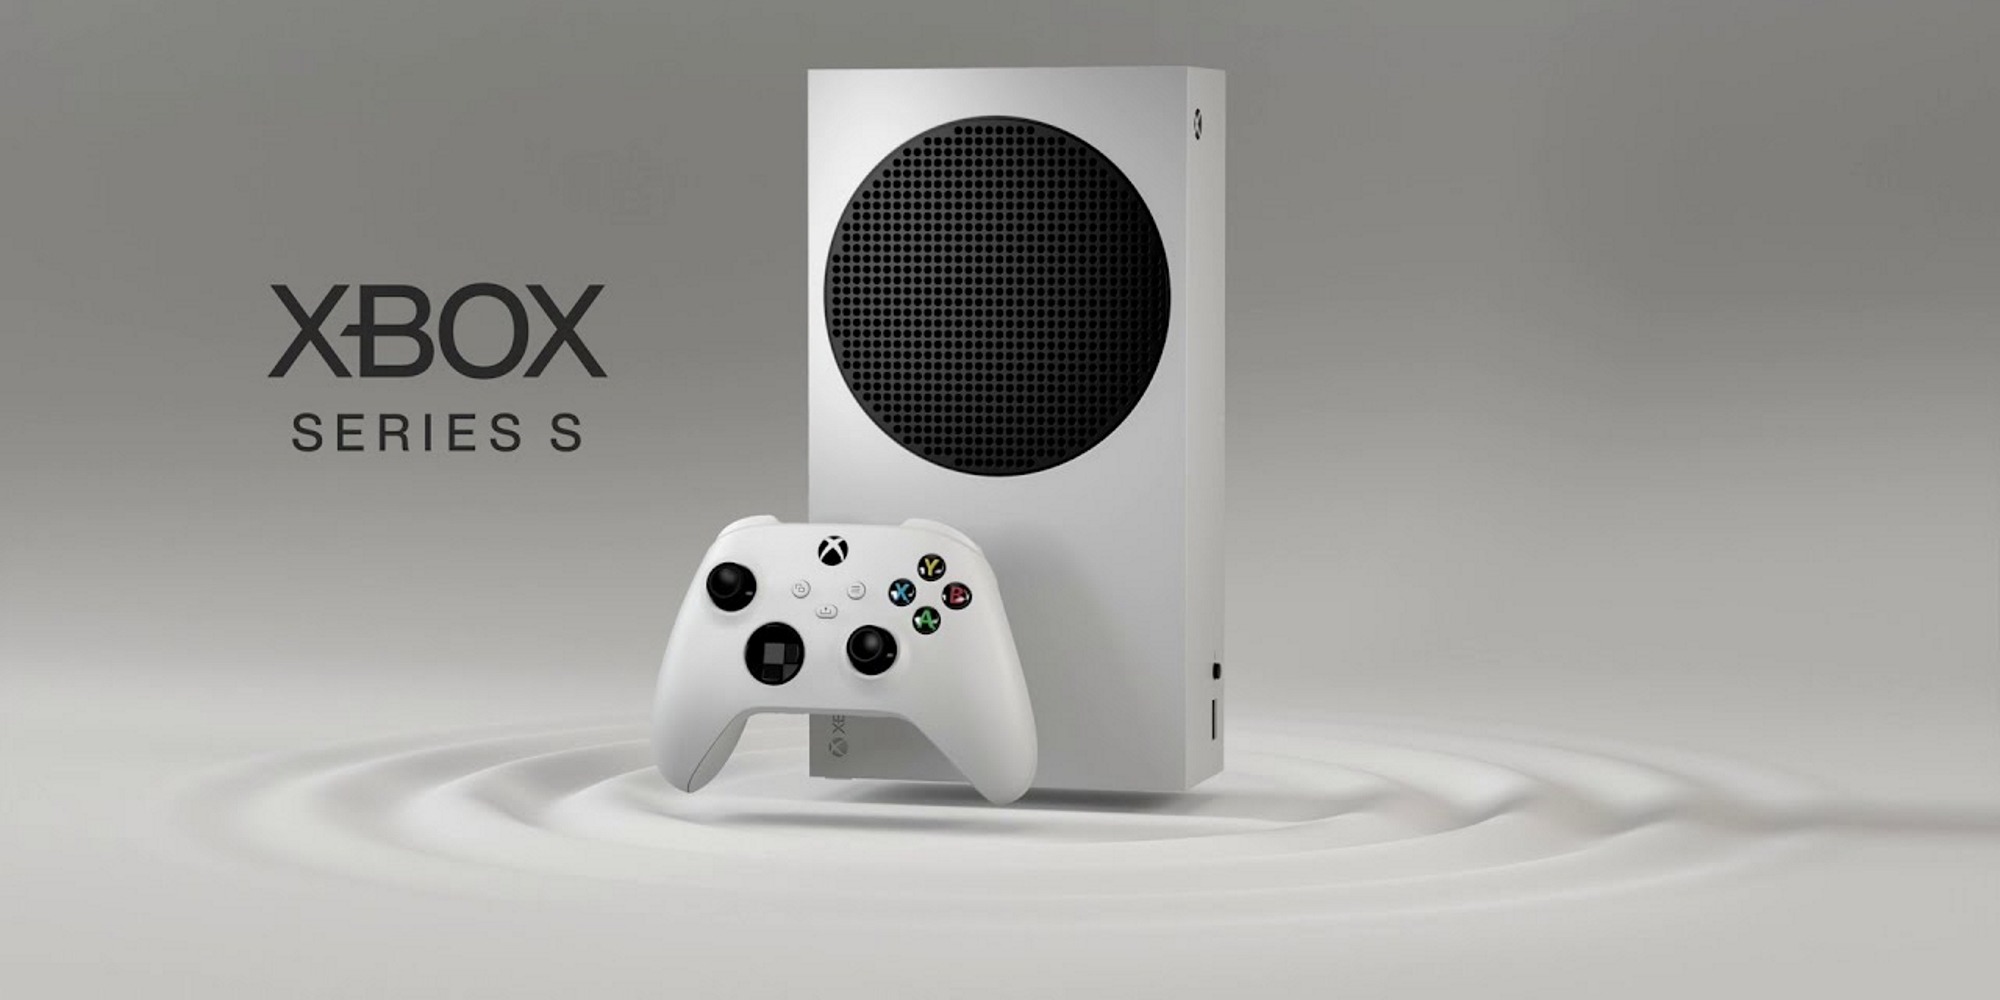 Exclusivos super aguardados do Xbox Game Studios confirmados para 2023 e  2024